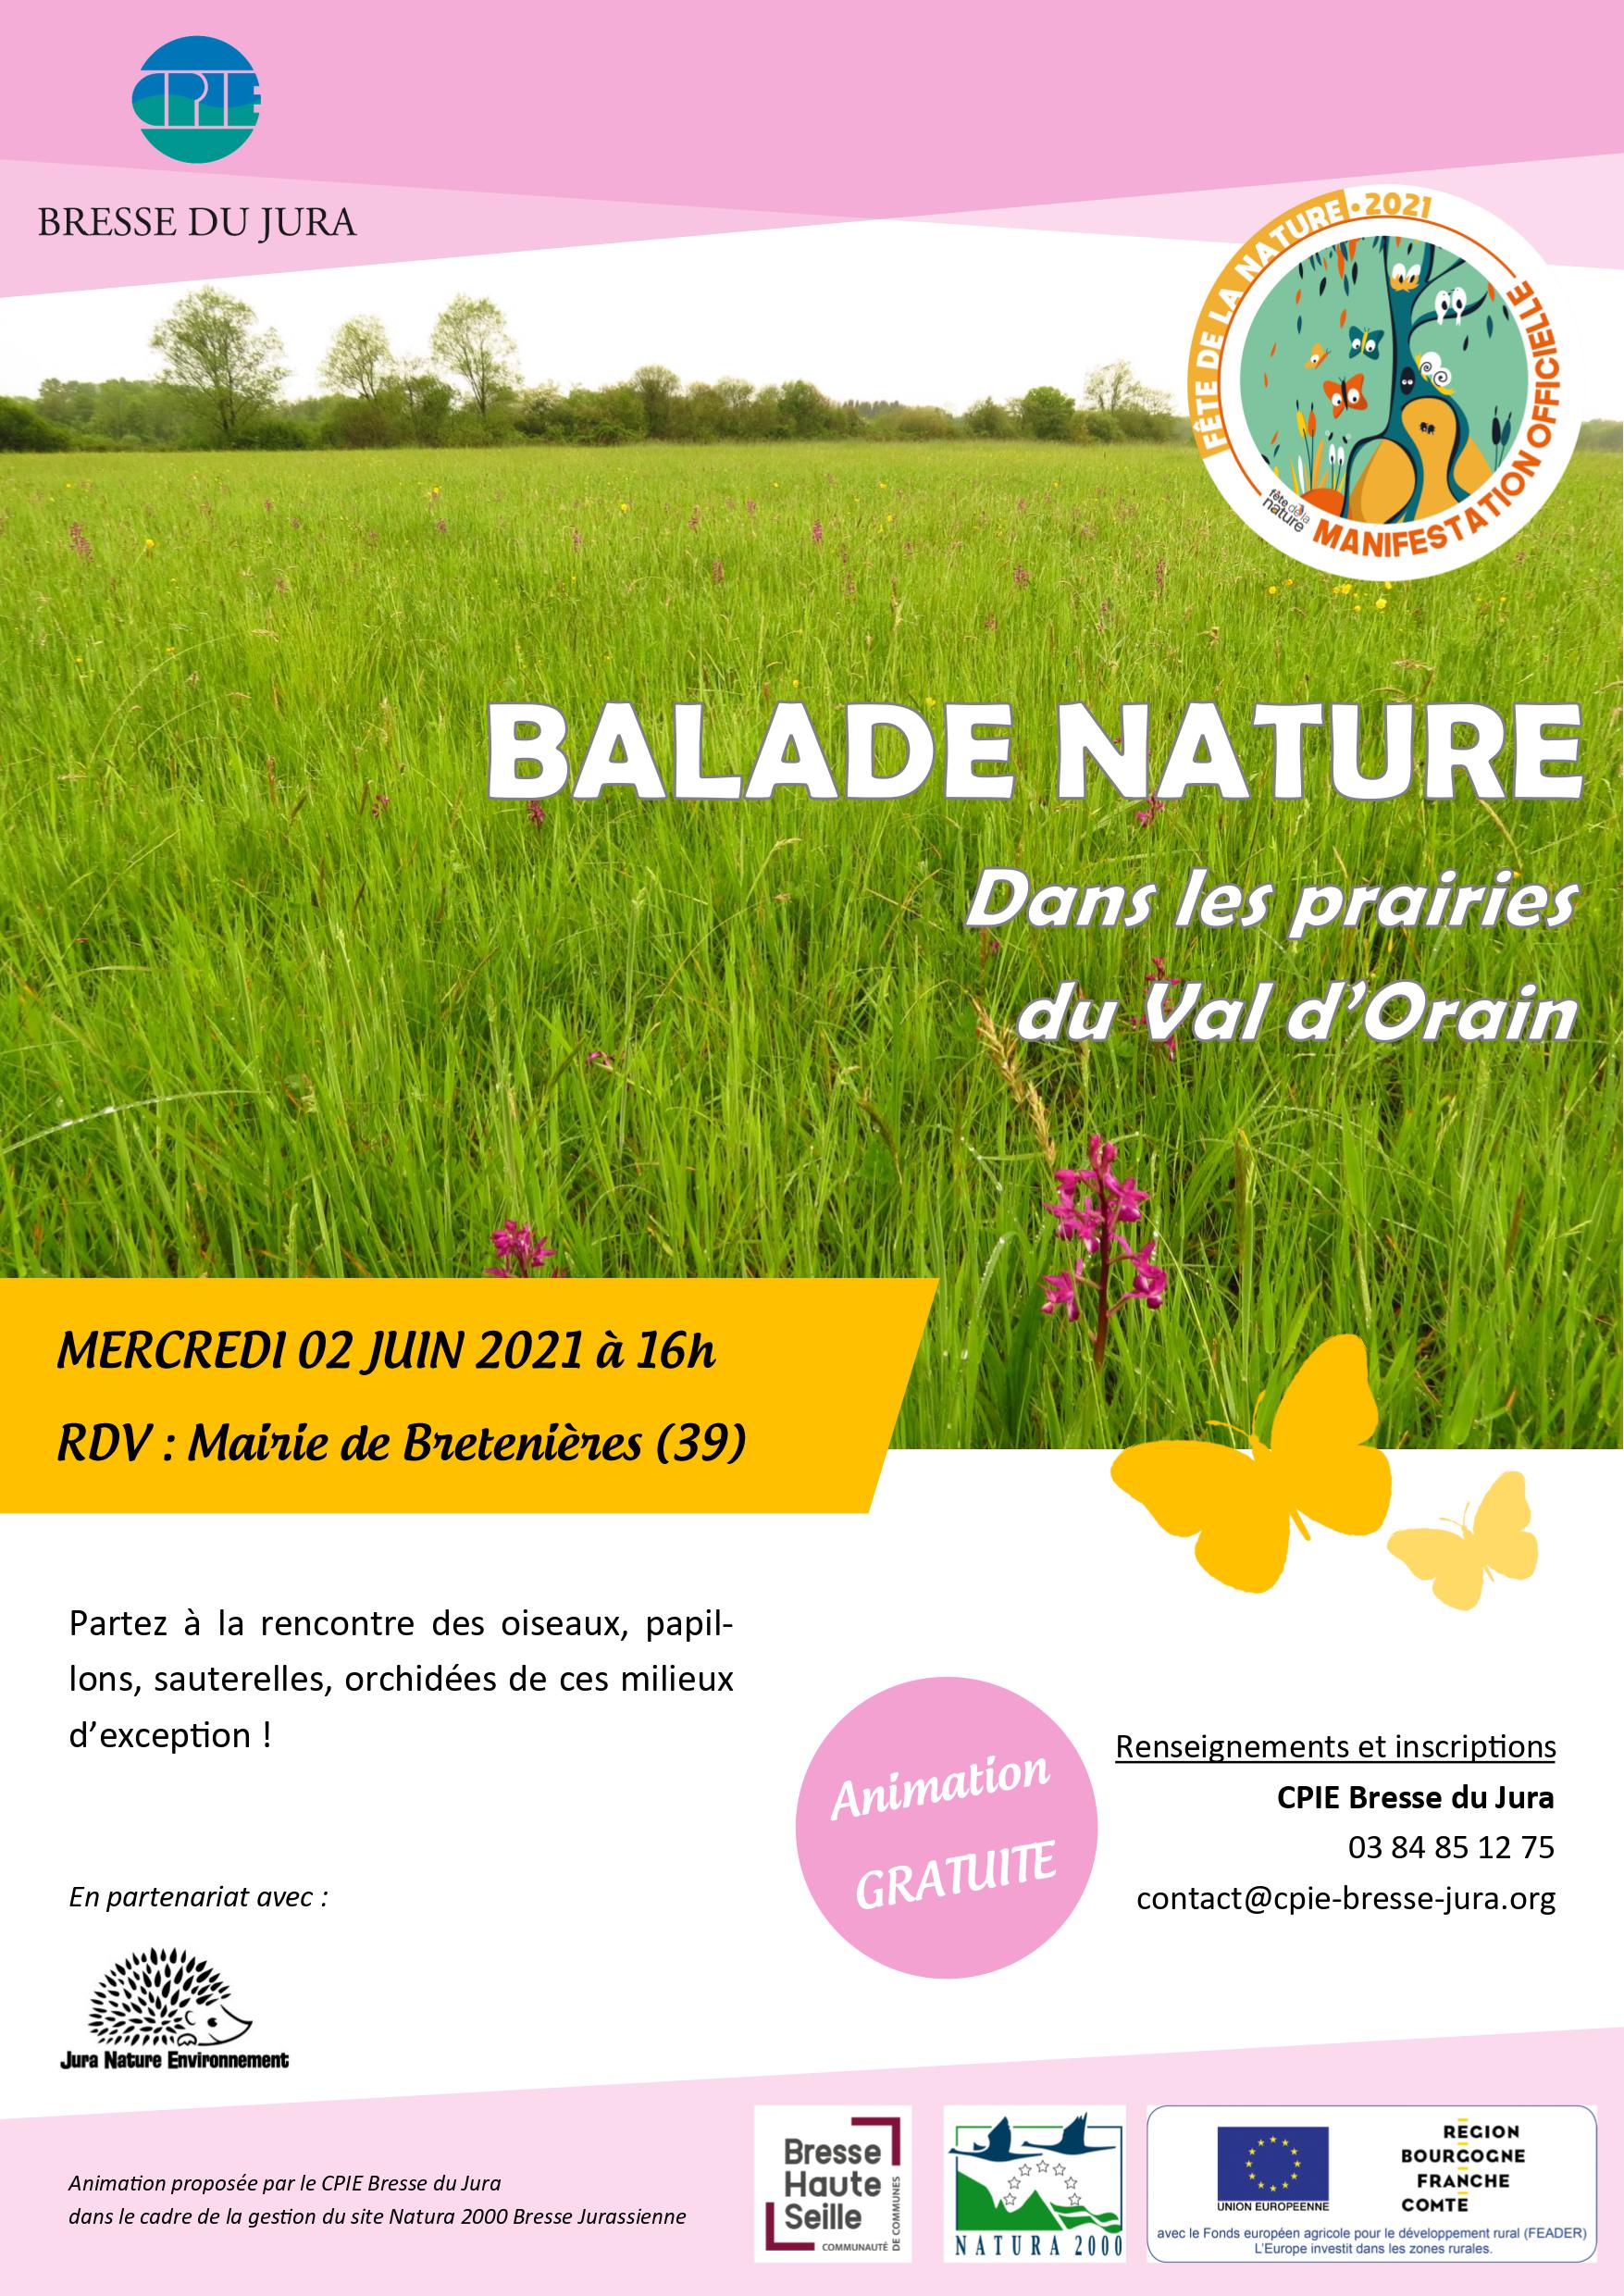 [REPORTE] Balade nature dans les prairies du Val d’Orain le 19 mai REPORTEE au 2 juin